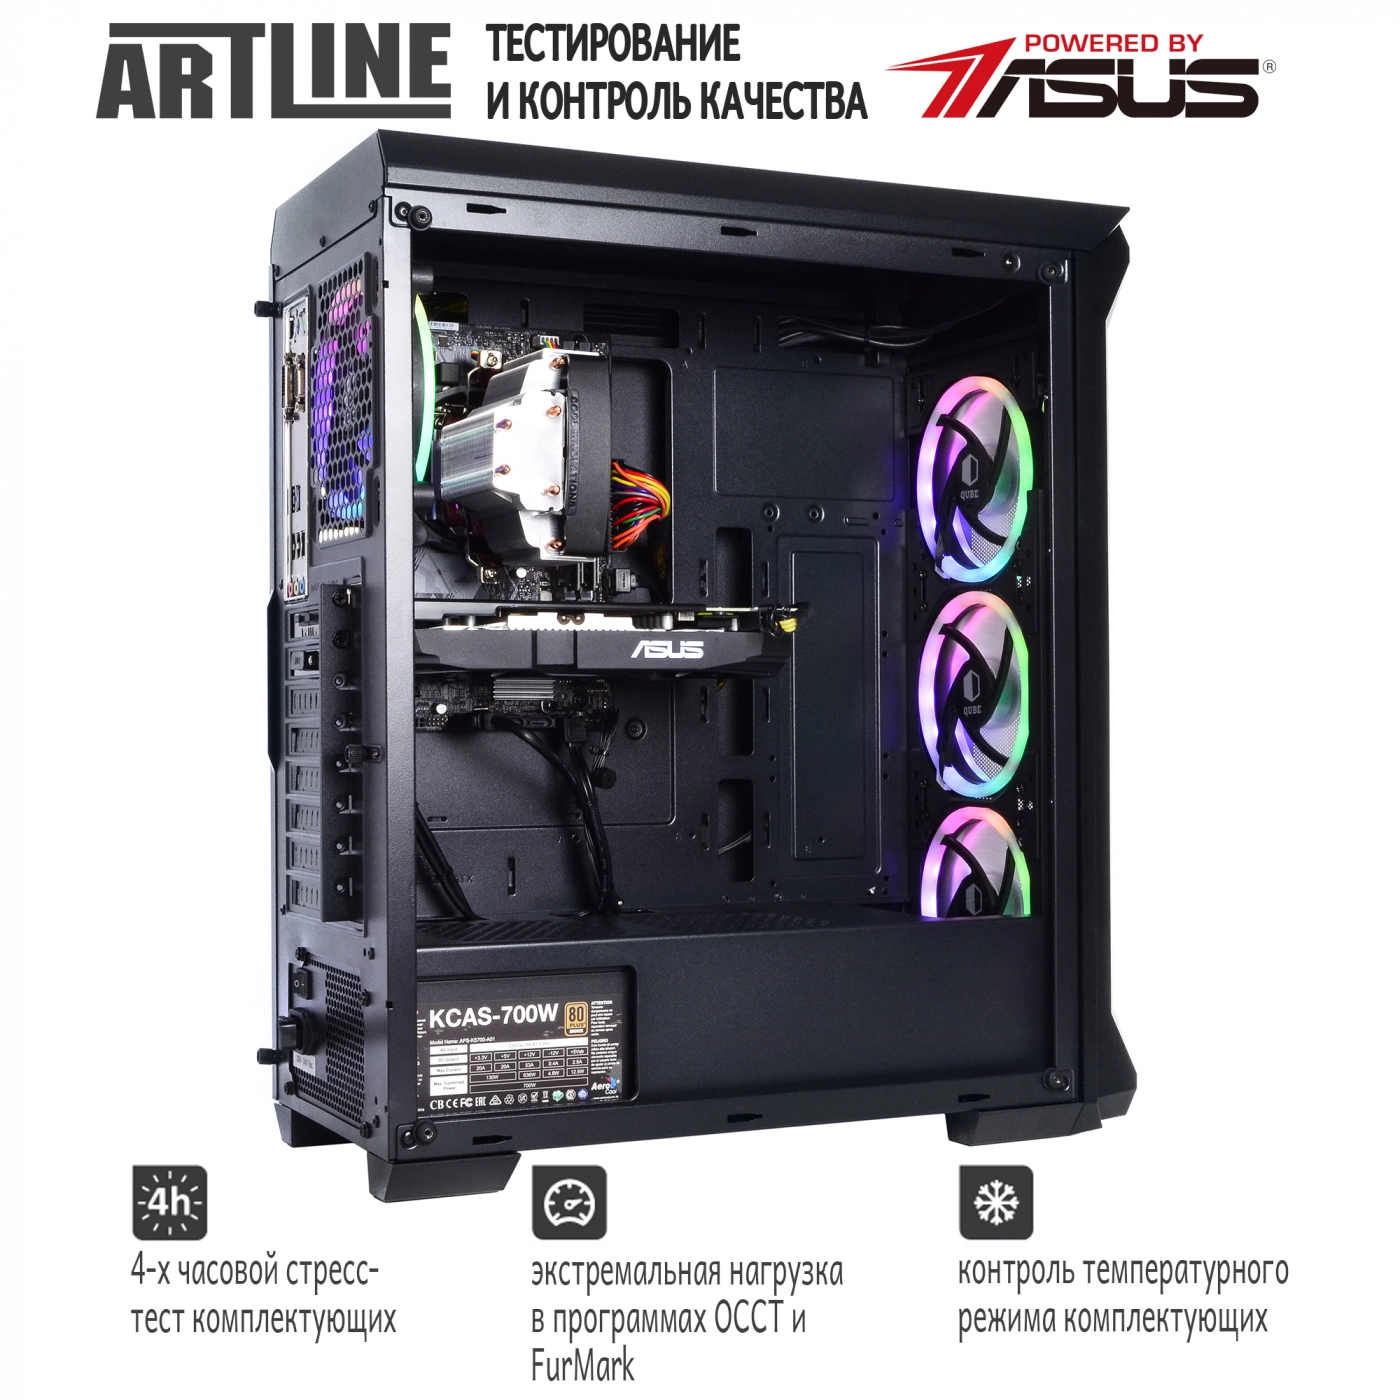 Купить Компьютер ARTLINE Gaming X73v16 - фото 6